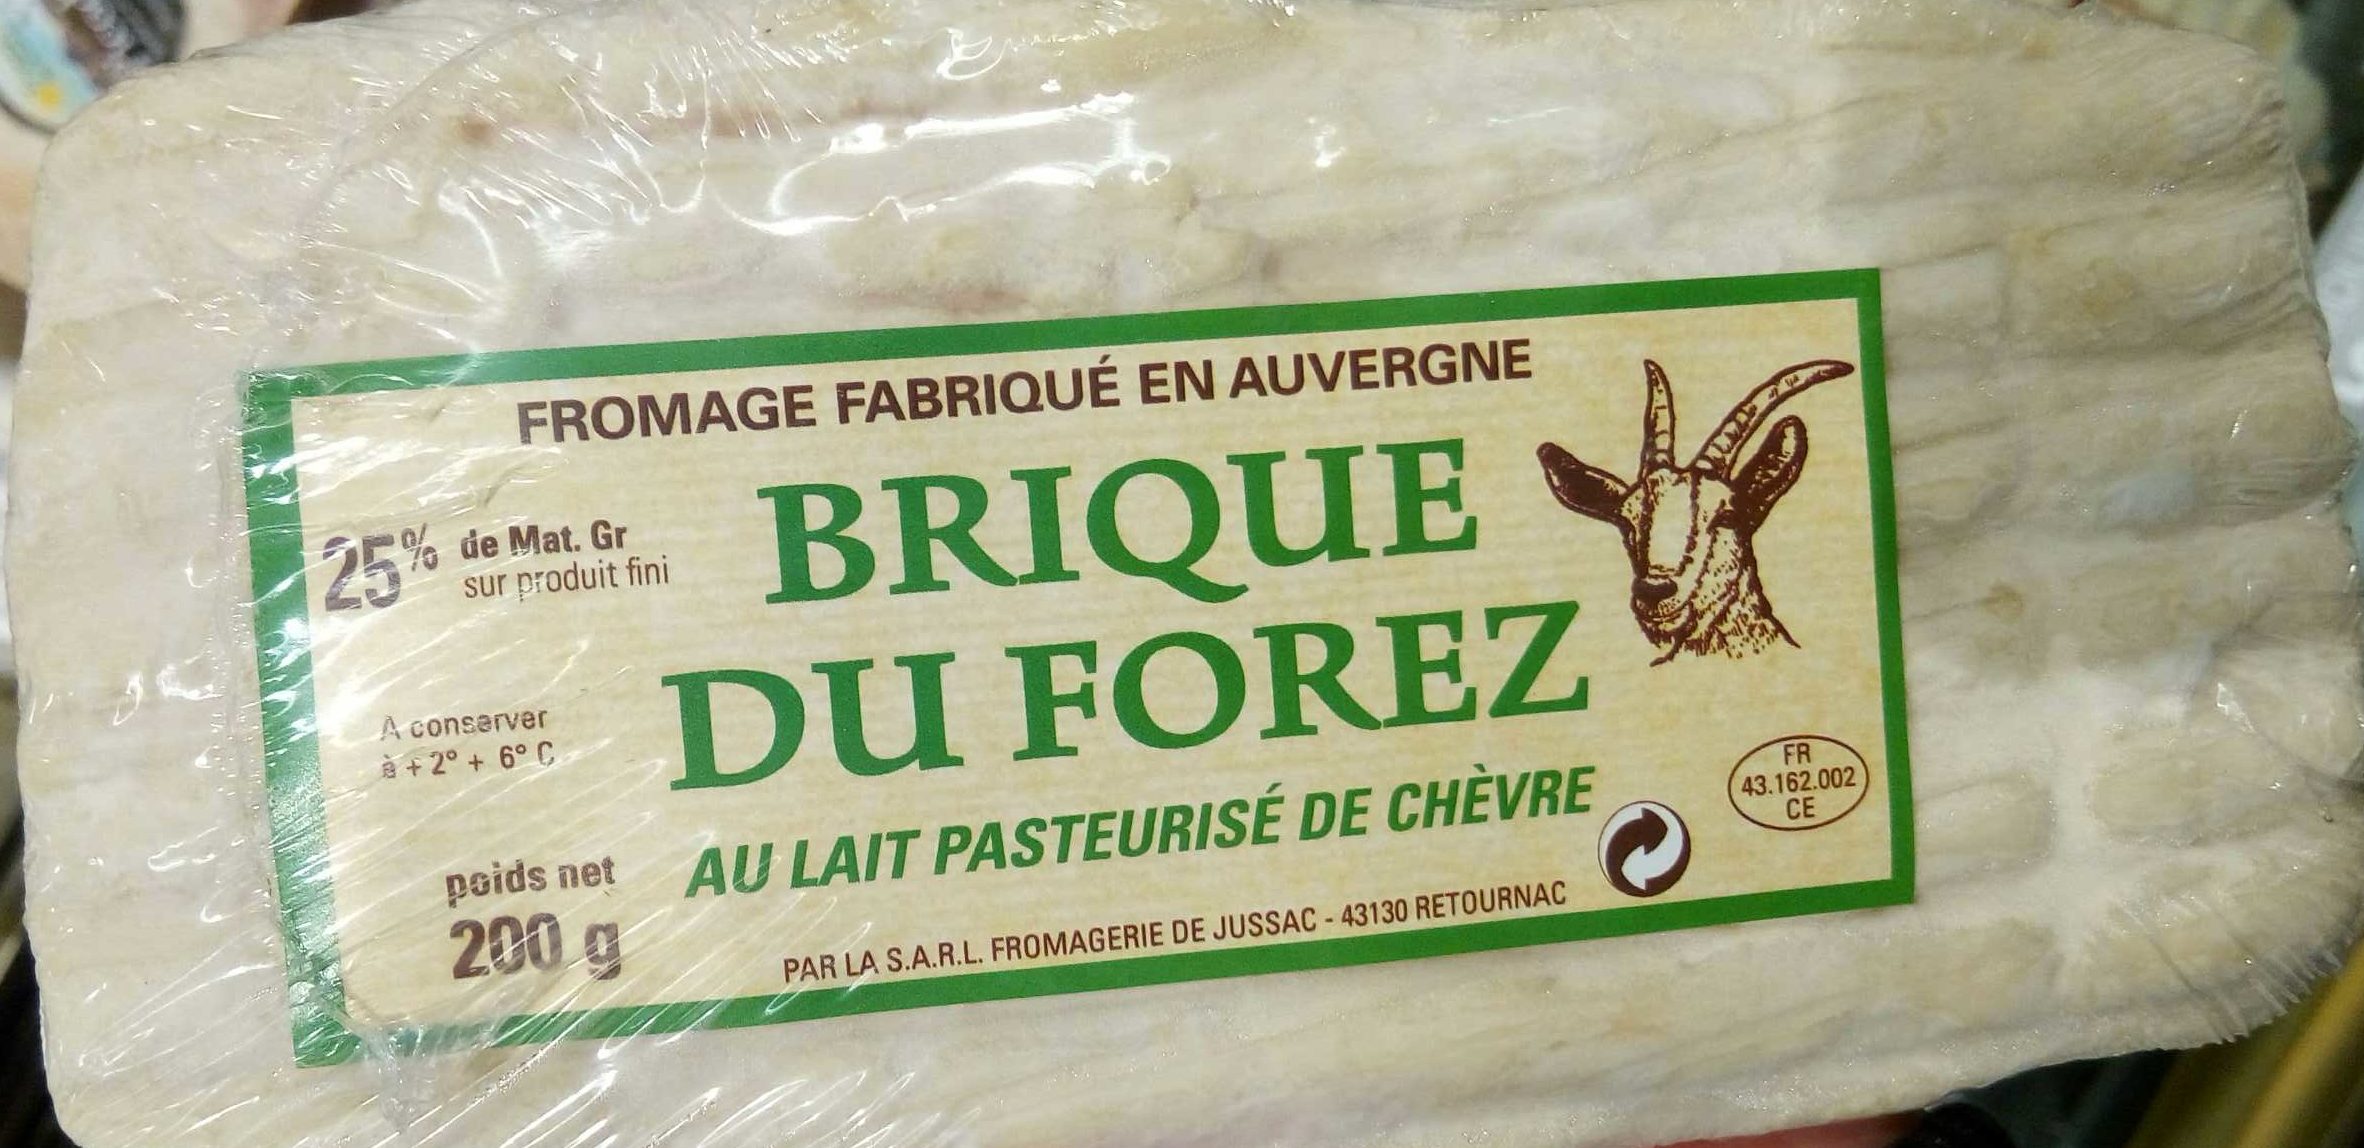 Brique du Forez au lait pasteurisé de chèvre (25 % MG) - Product - fr